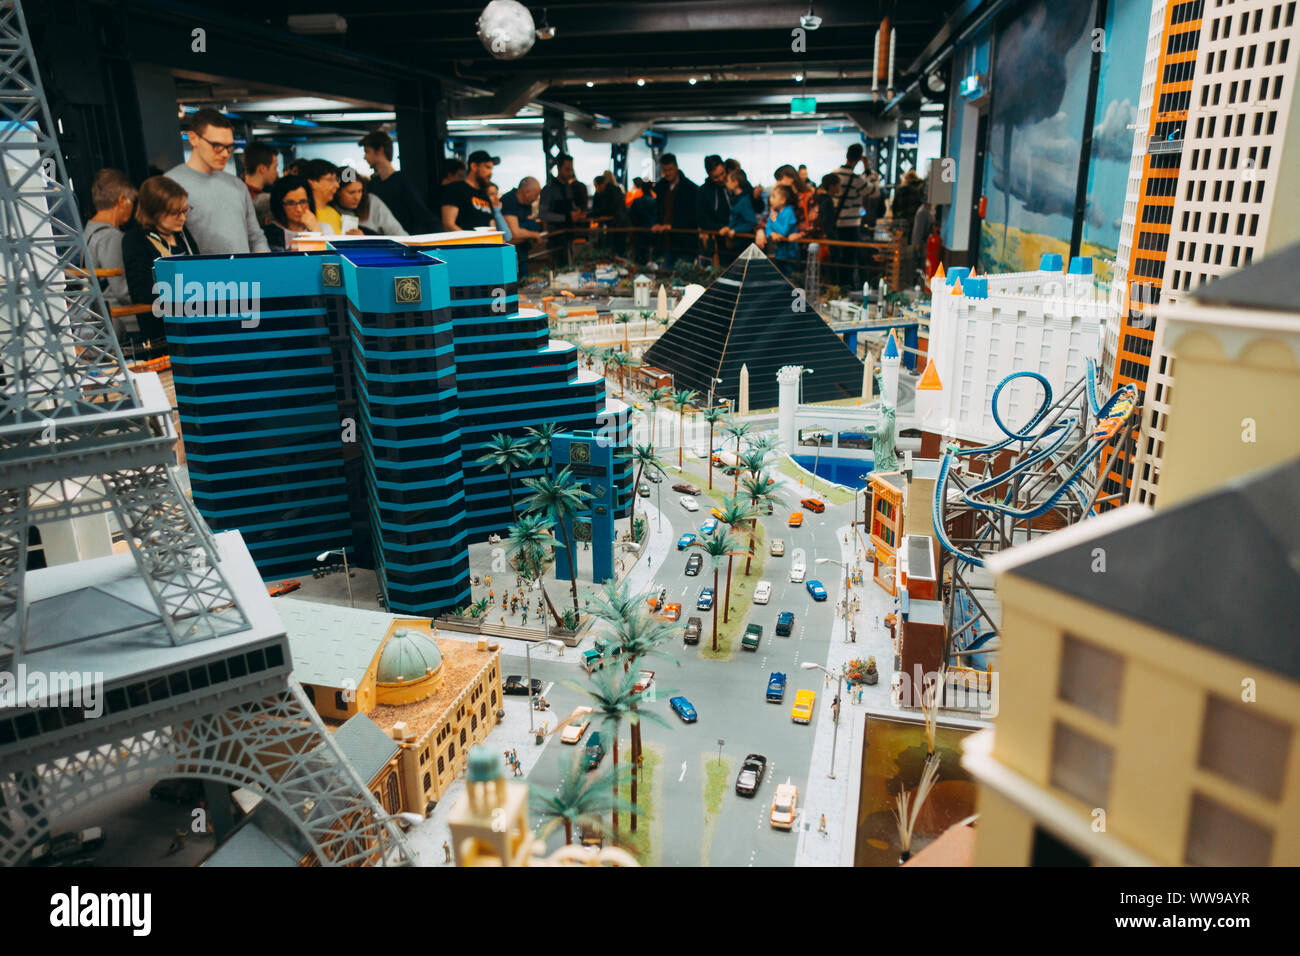 Eine Miniaturausgabe des Las Vegas Strip im Amerika der Miniatur Wunderland in Hamburg, Deutschland Stockfoto